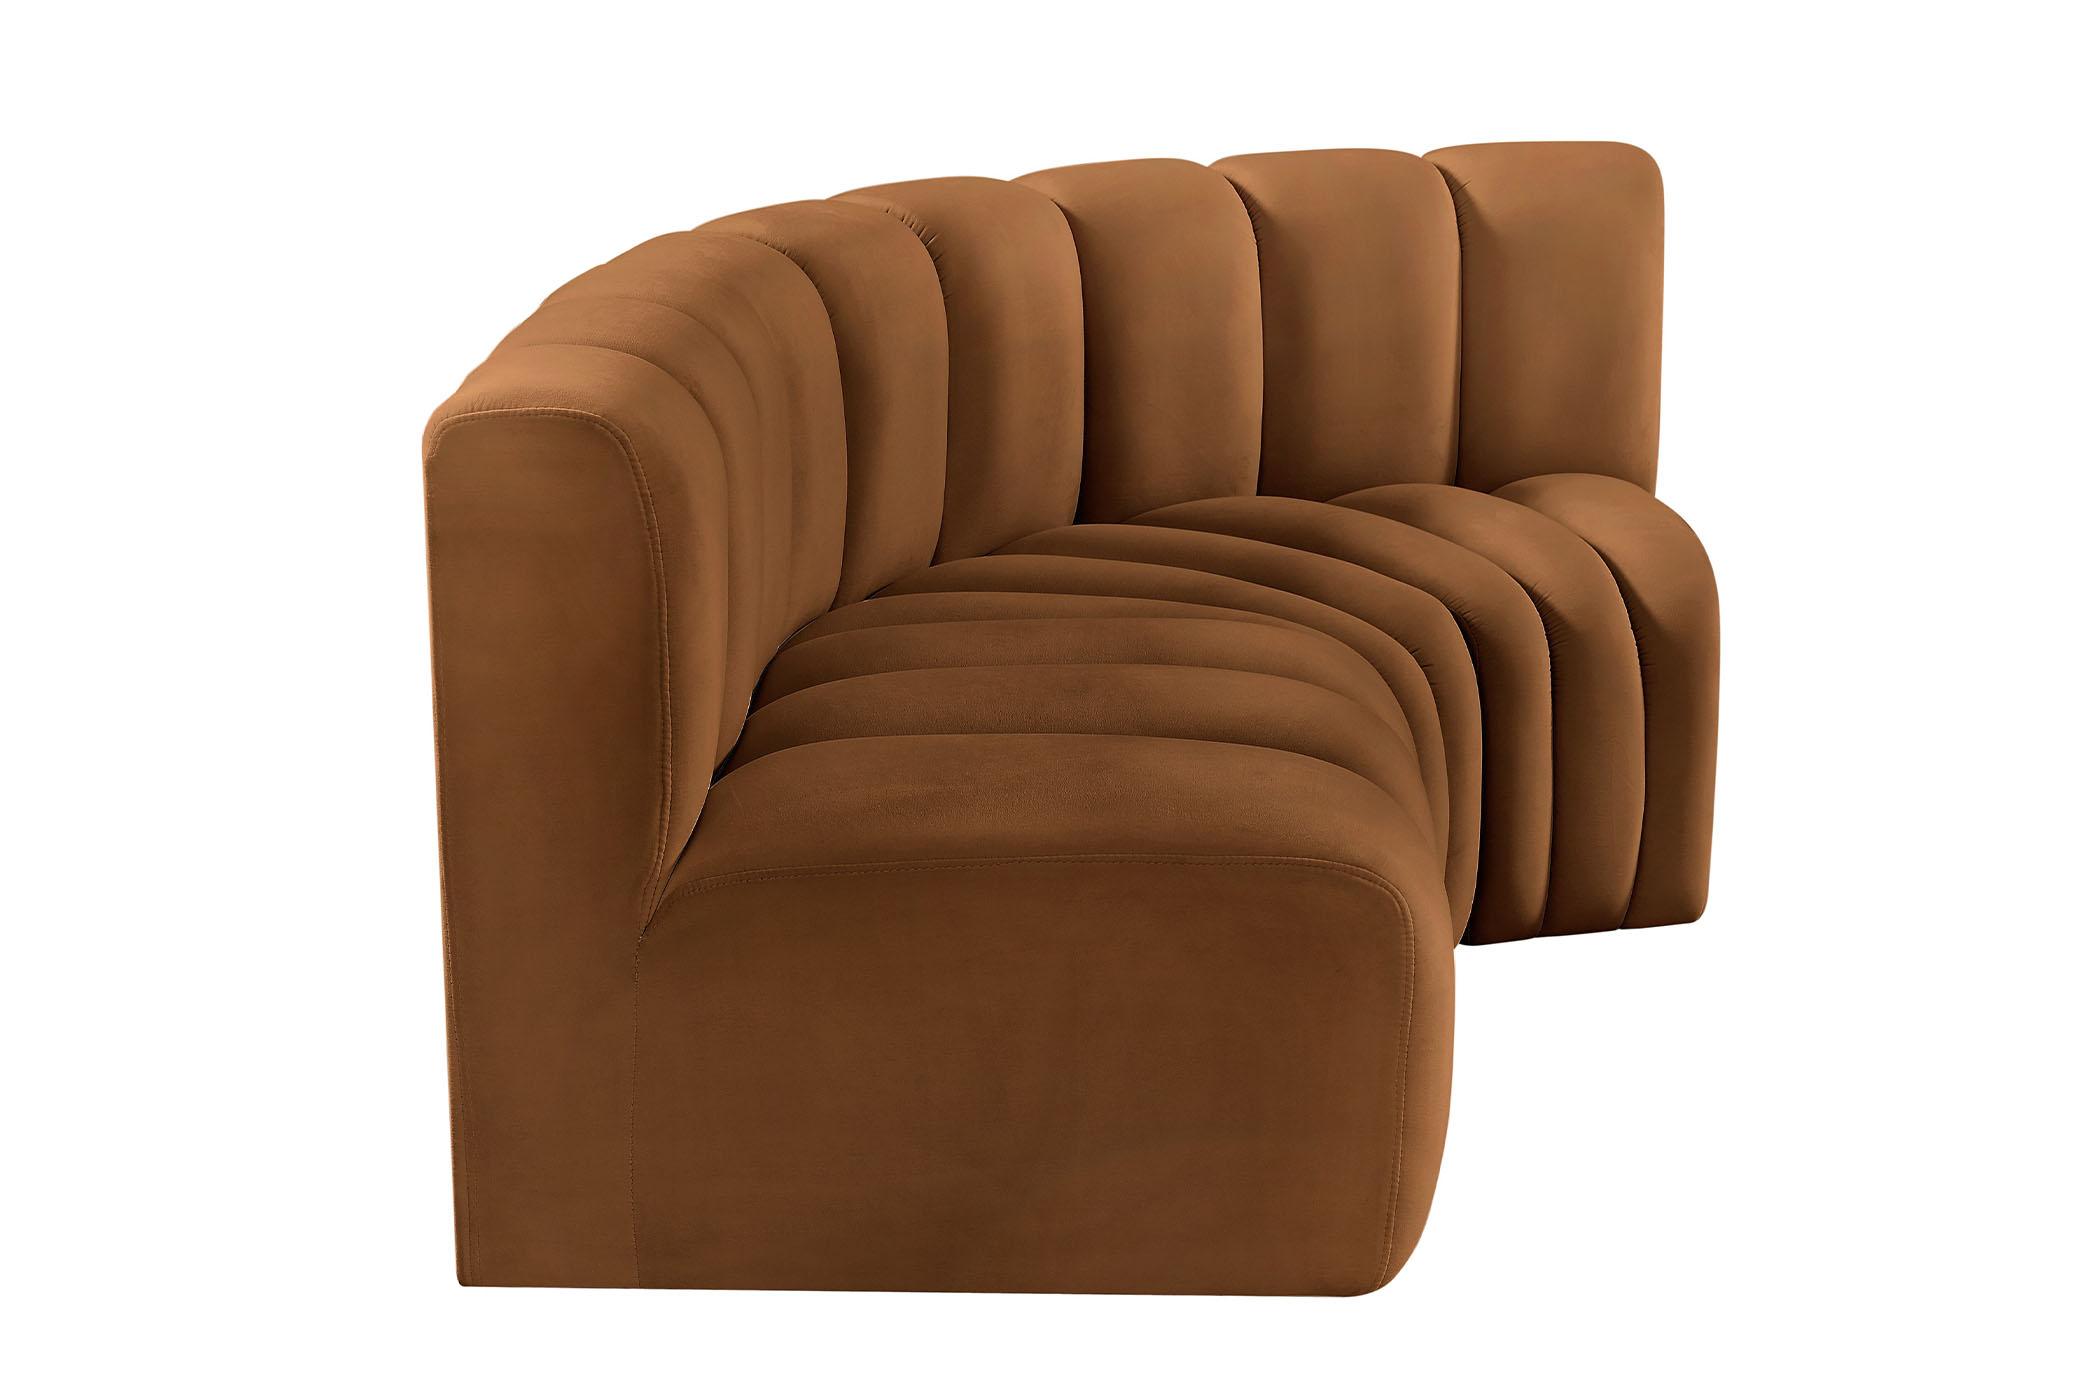 

    
103Saddle-S3A Meridian Furniture Modular Sectional Sofa
